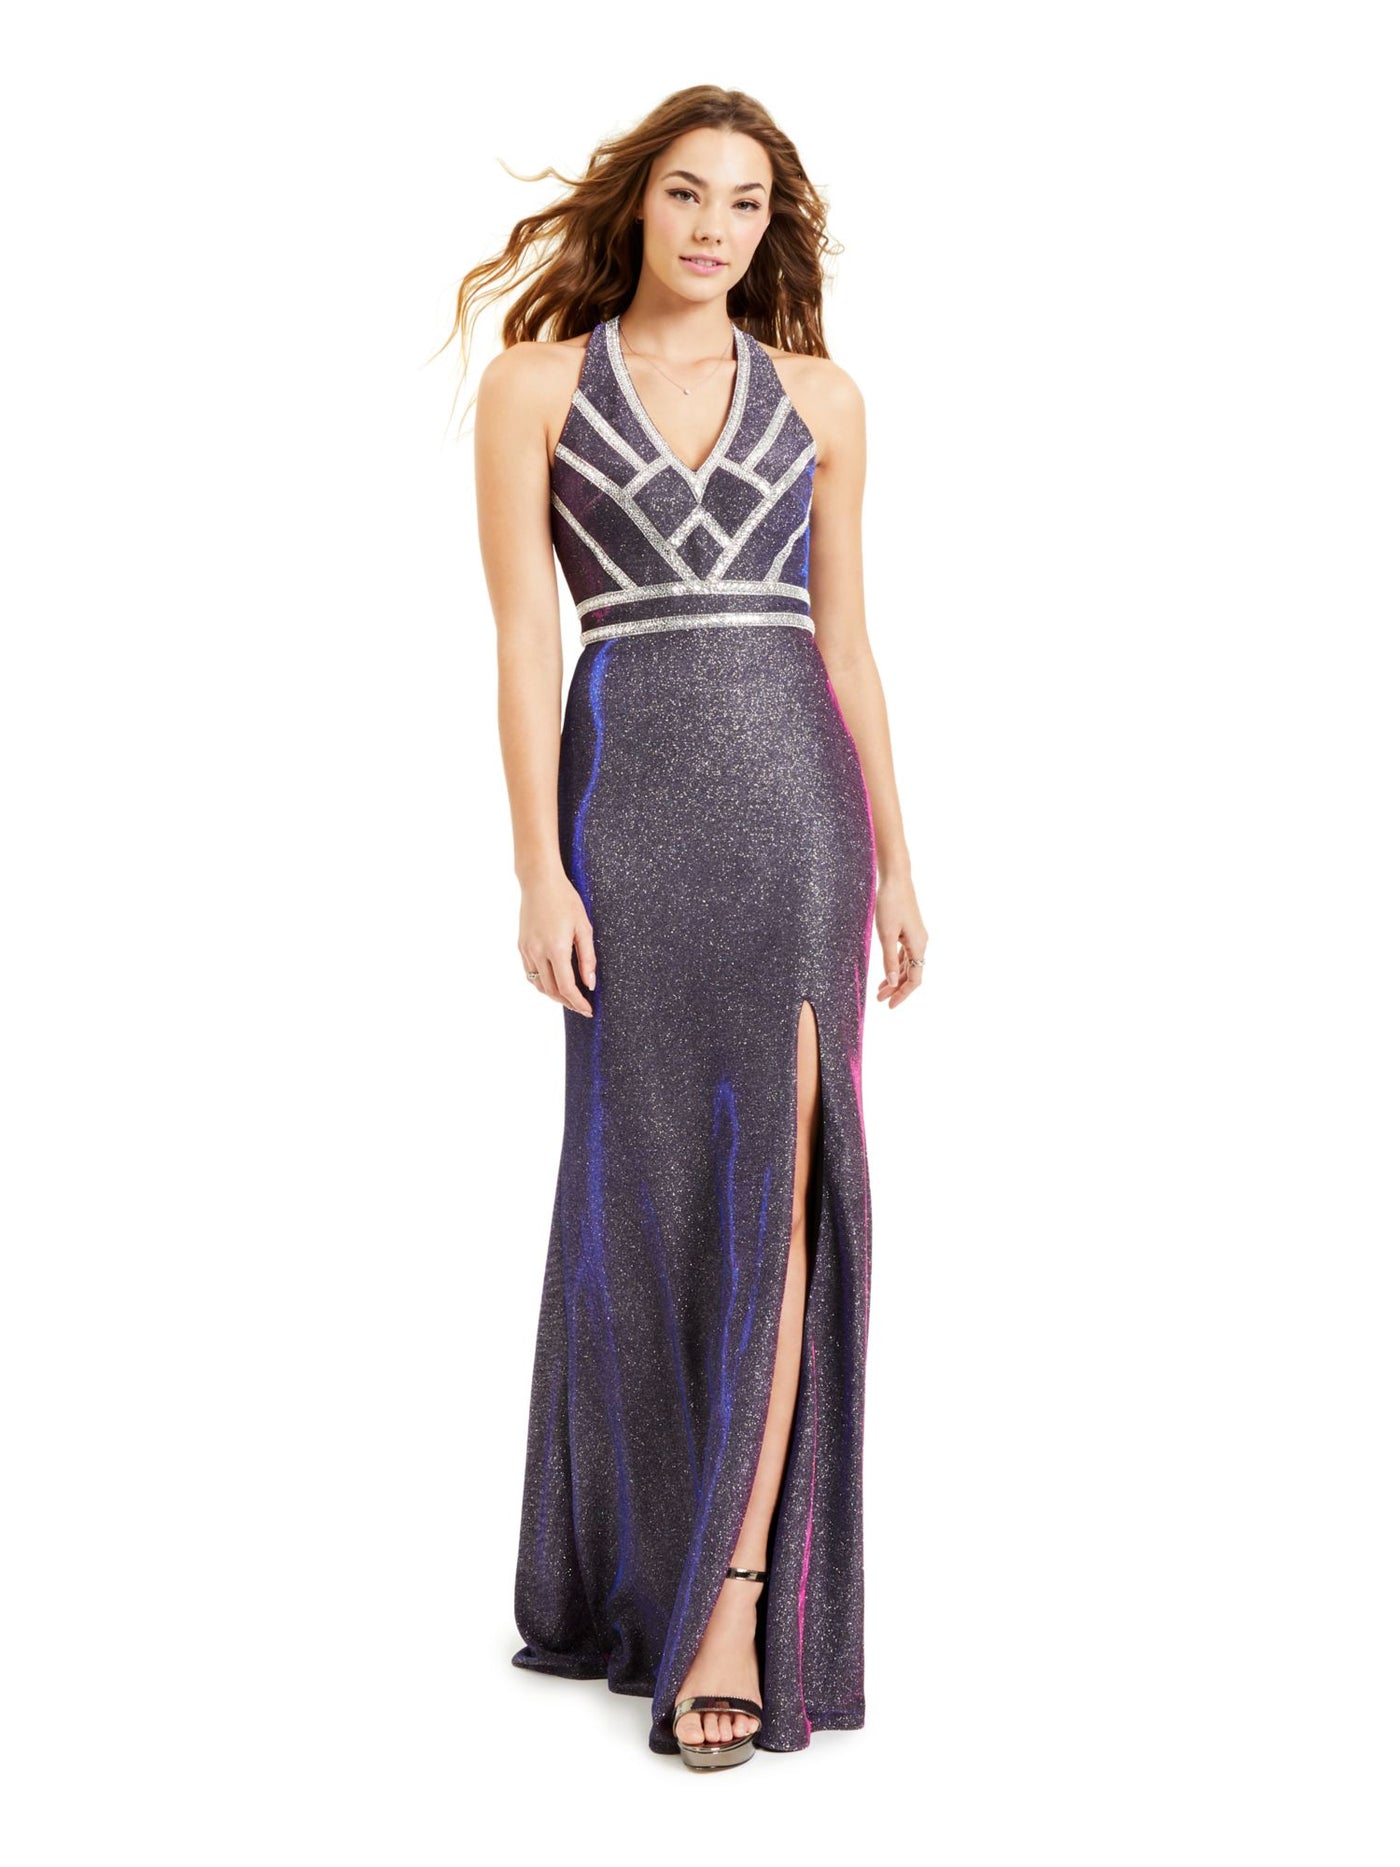 BLONDIE Womens Purple Glitter Embellished Slitted Gown Sleeveless V Neck Full-Length Prom Dress Juniors 1